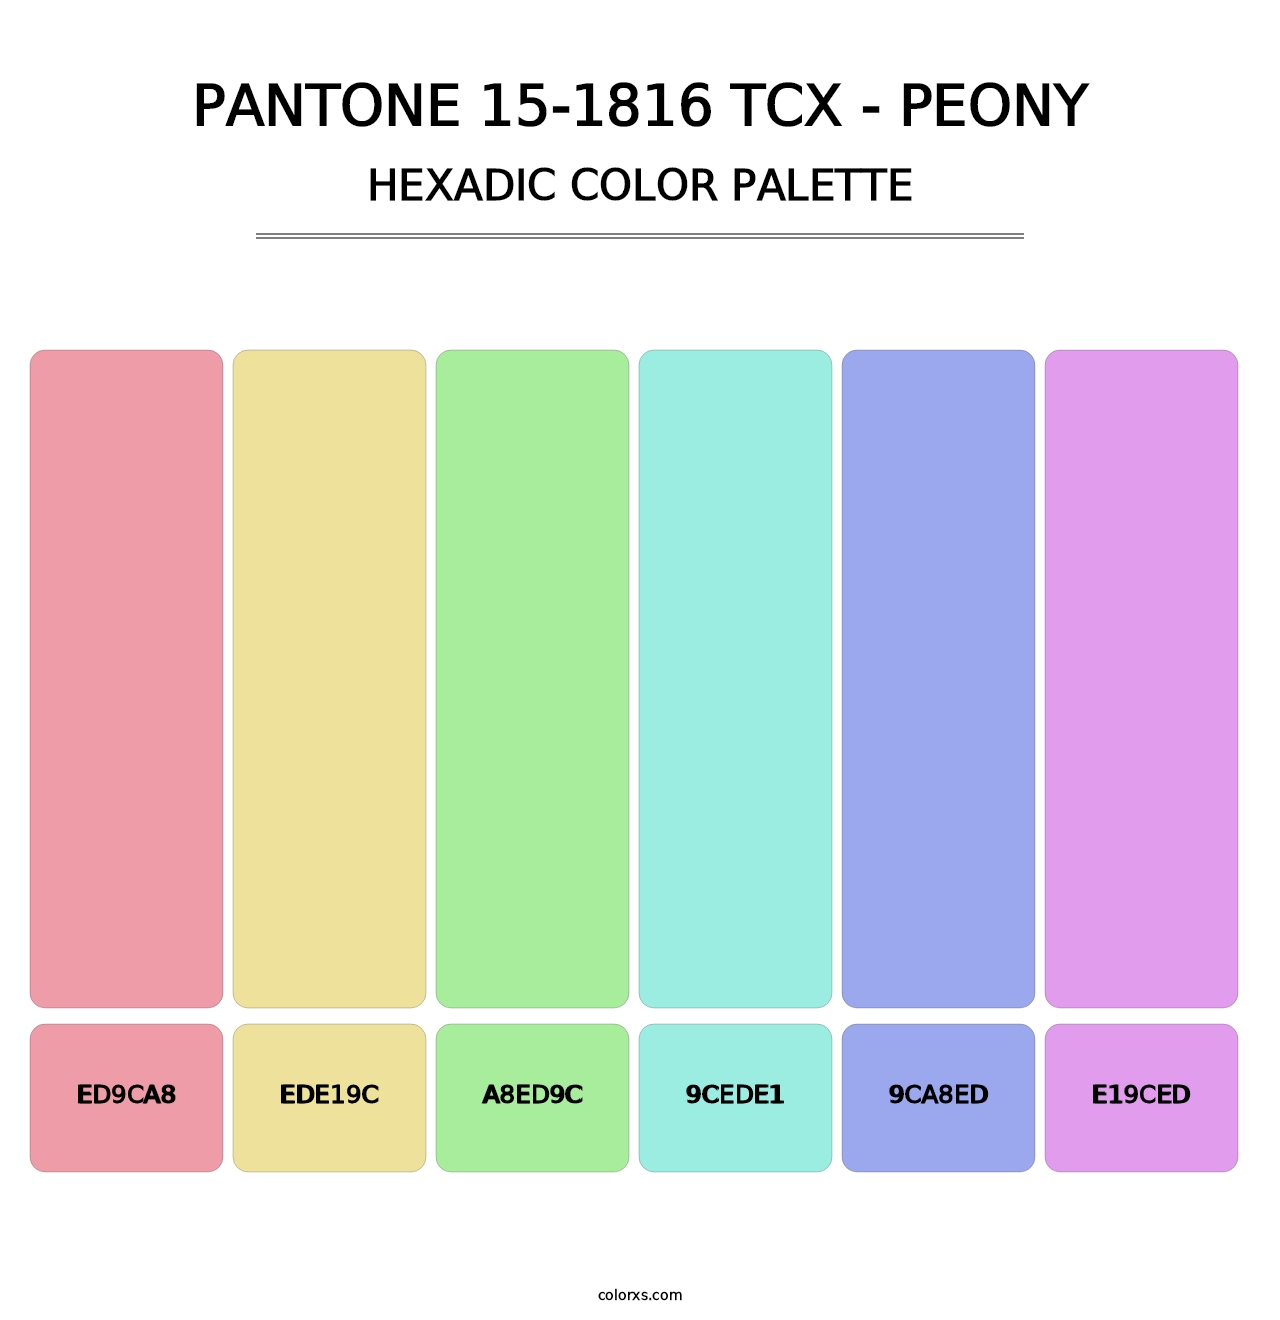 PANTONE 15-1816 TCX - Peony - Hexadic Color Palette